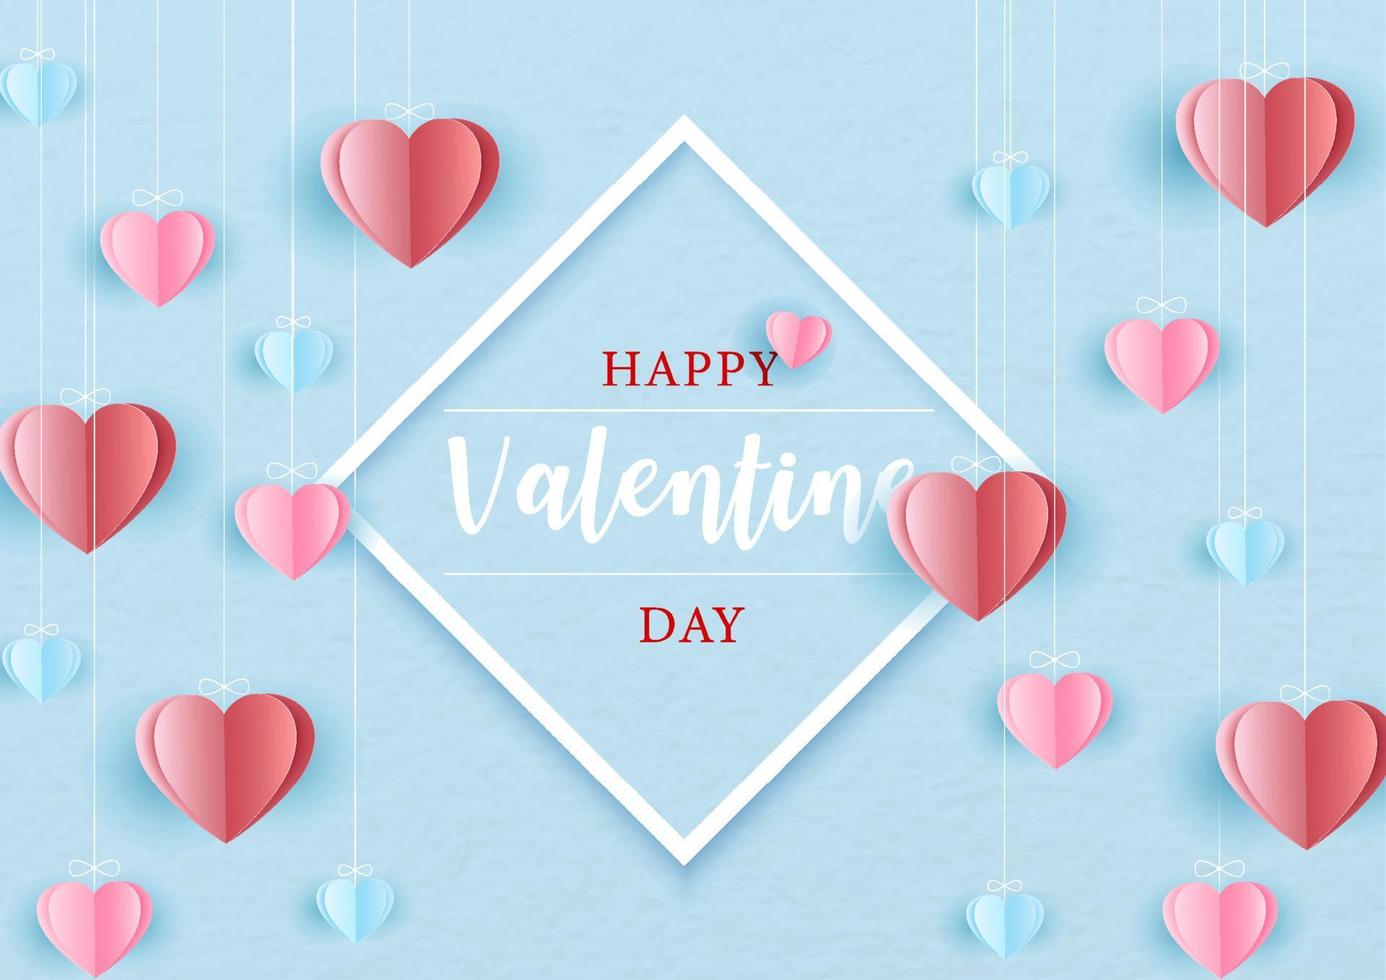 la redacción del feliz día de san valentín en un marco blanco con corazones rojos, rosas y azules cuelgan sobre un fondo de patrón de papel azul. tarjeta de felicitación de San Valentín en estilo de corte de papel y diseño vectorial. vector